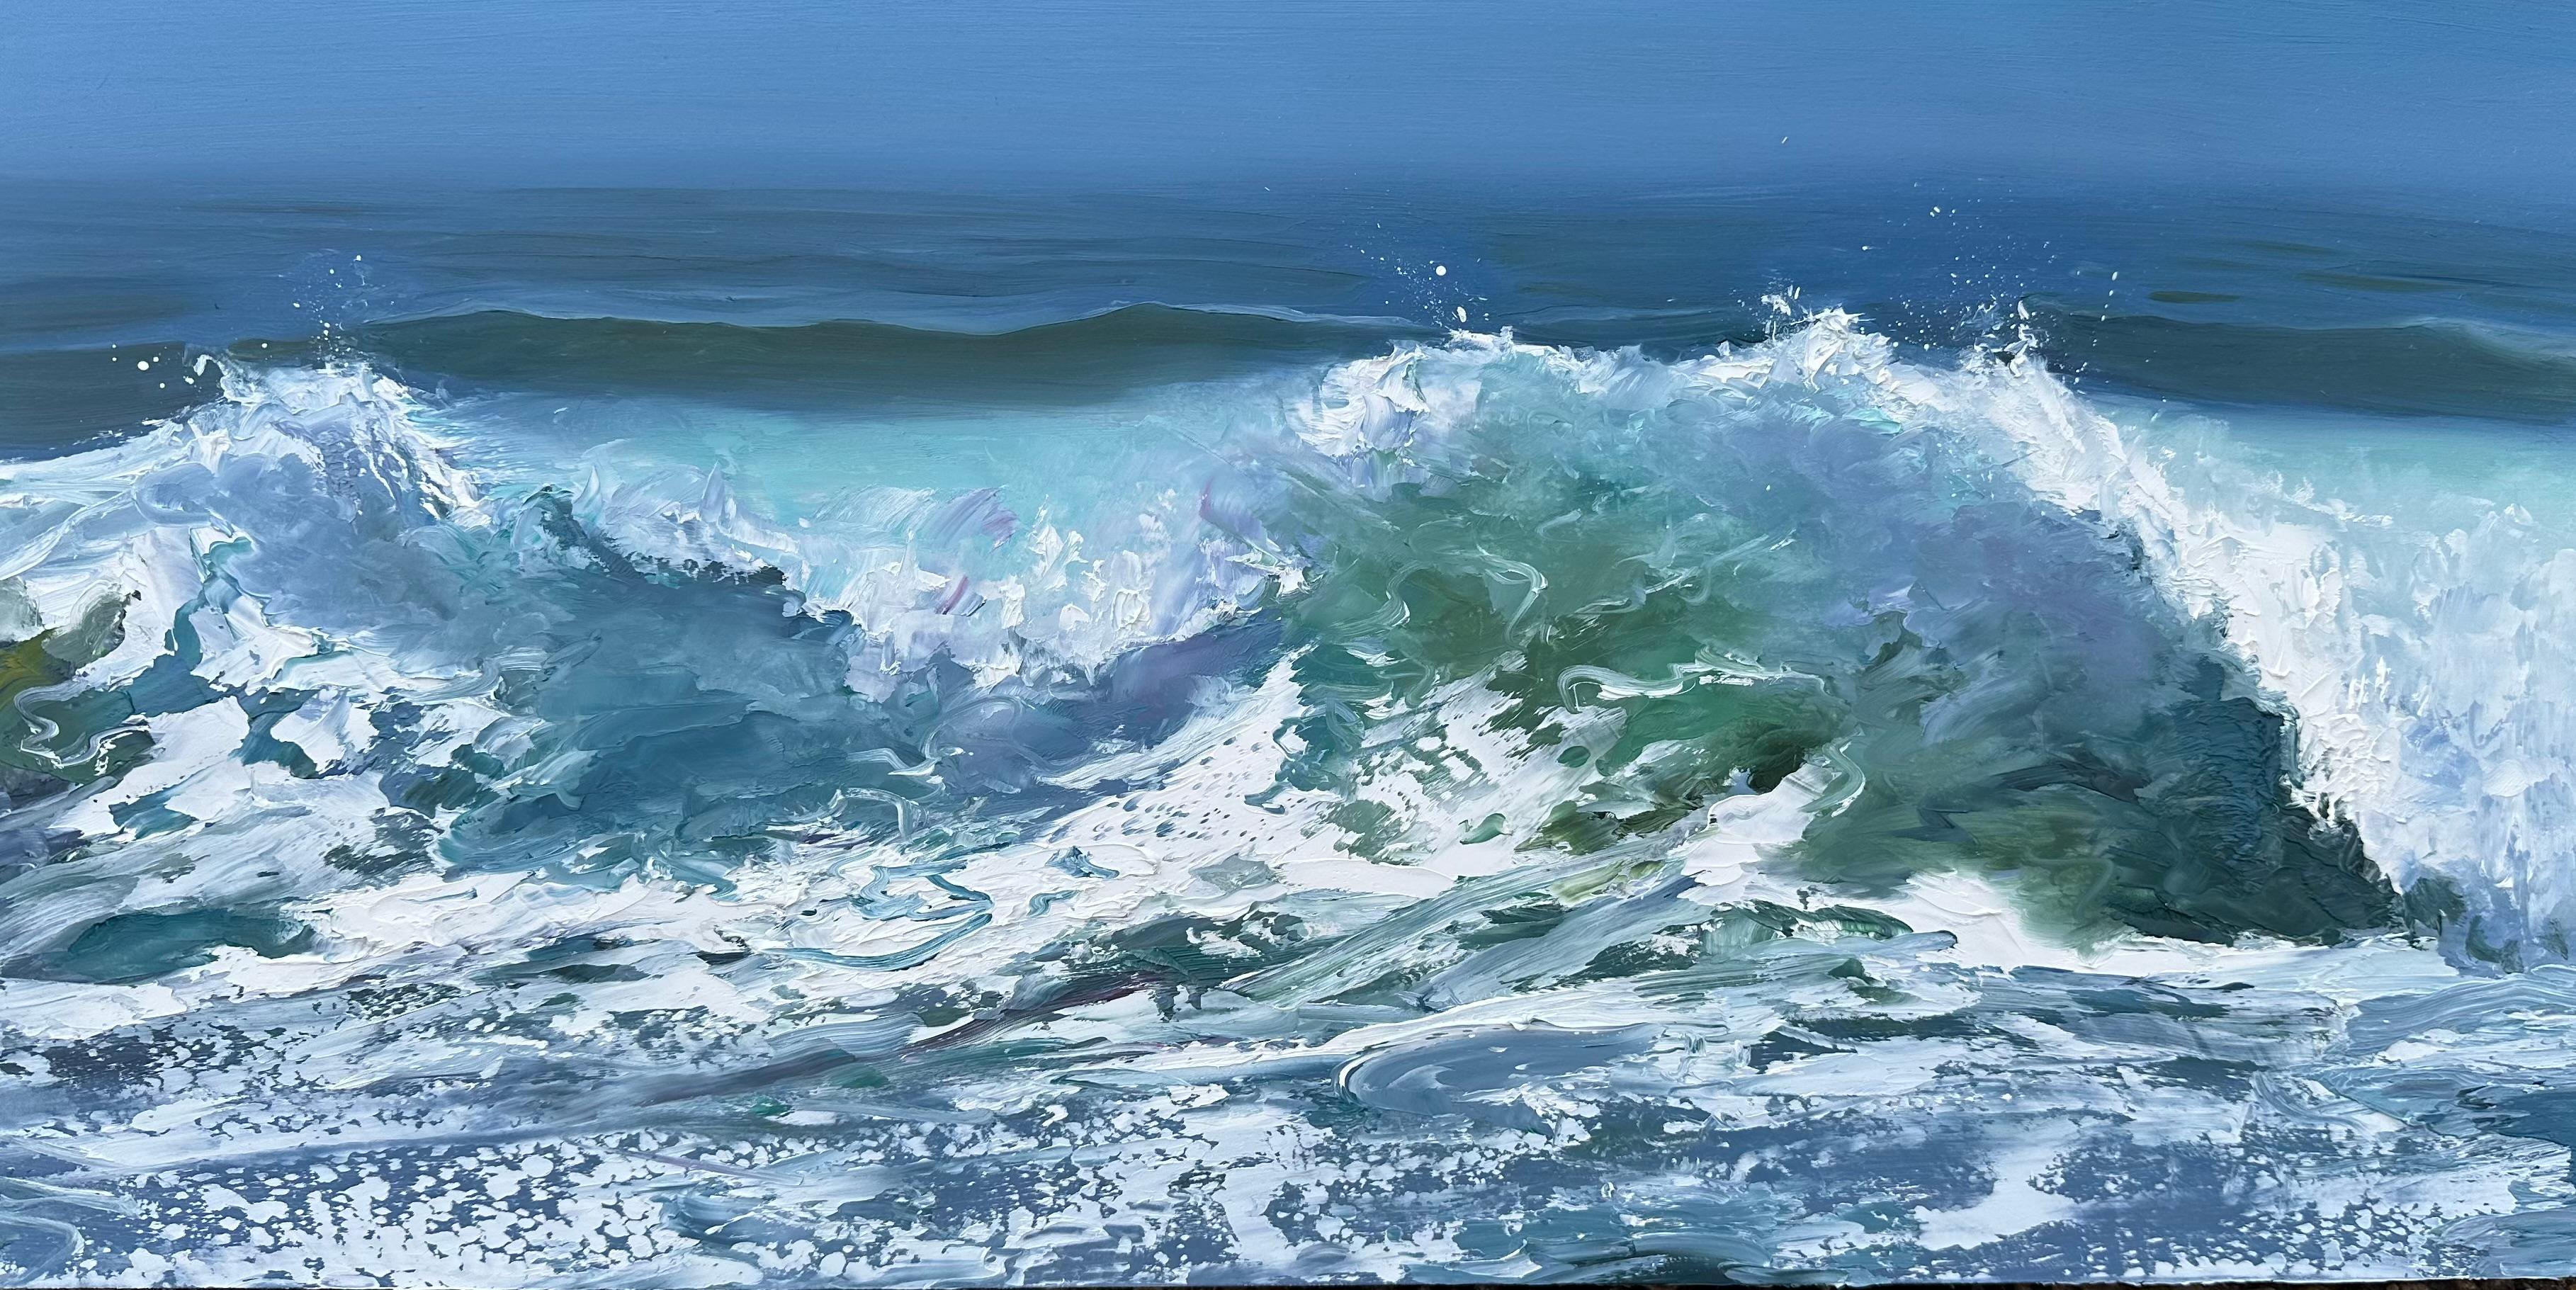 Landscape Painting Whitney Knapp - « Clomination », une peinture à l'huile de paysage représentant des vagues encrasées